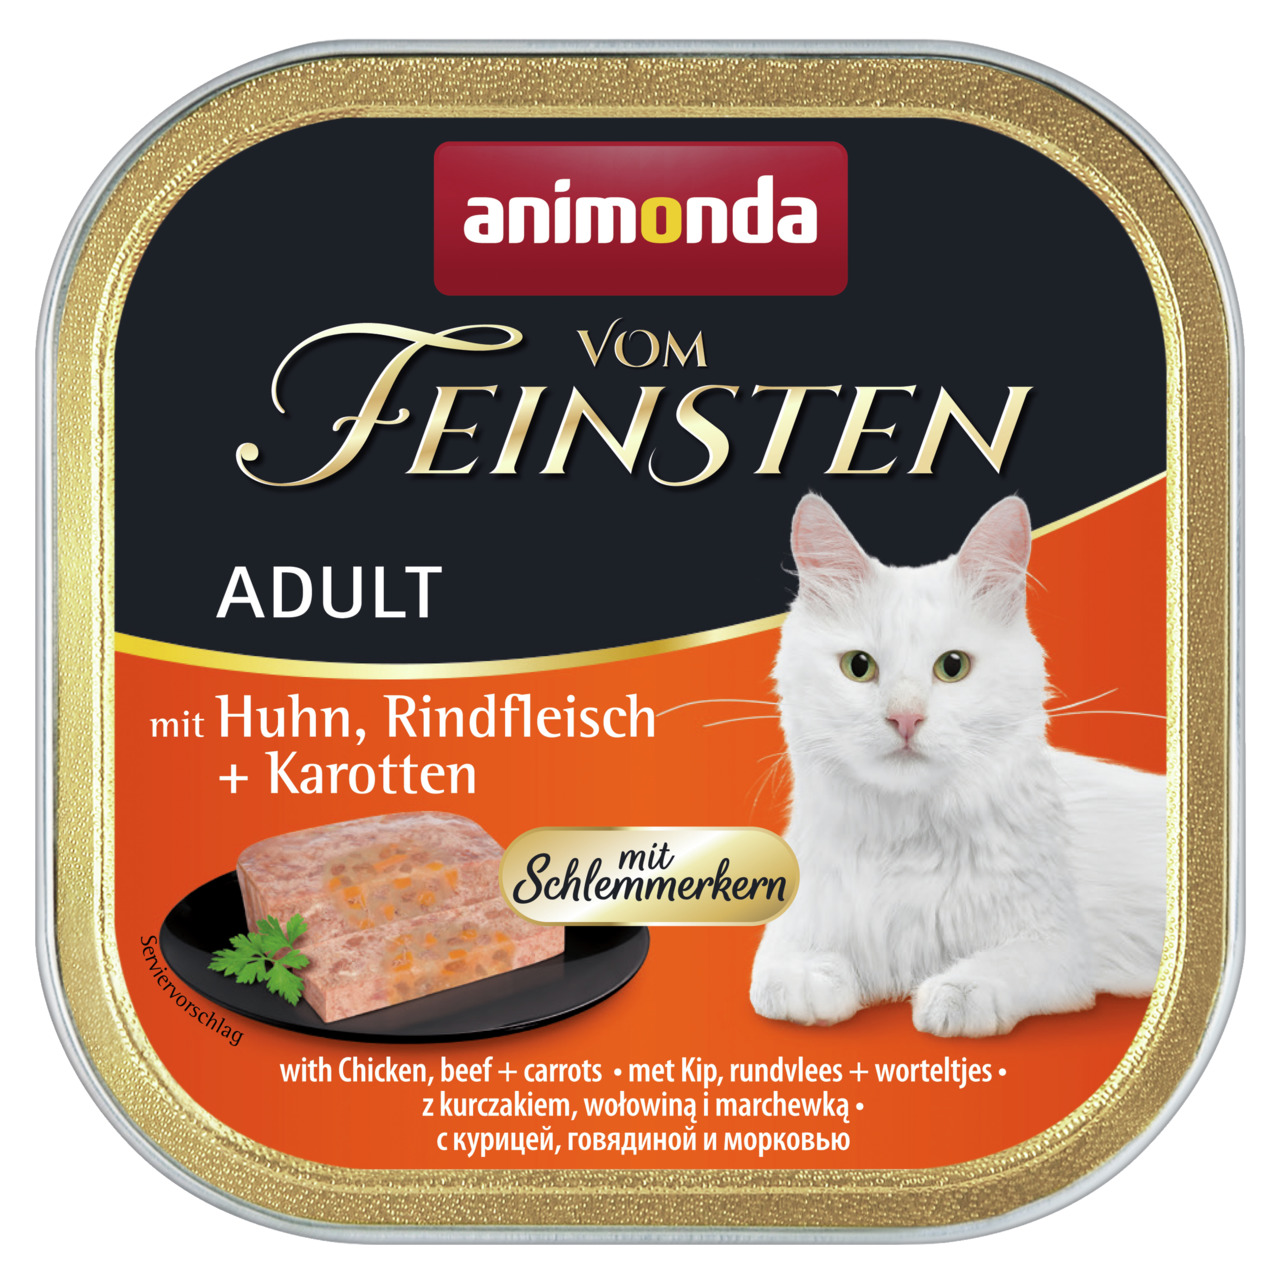 Sparpaket 8 x 100 g Animonda vom Feinsten Adult mit Huhn, Rindfleisch + Karotten mit Schlemmerkern Katzen Nassfutter